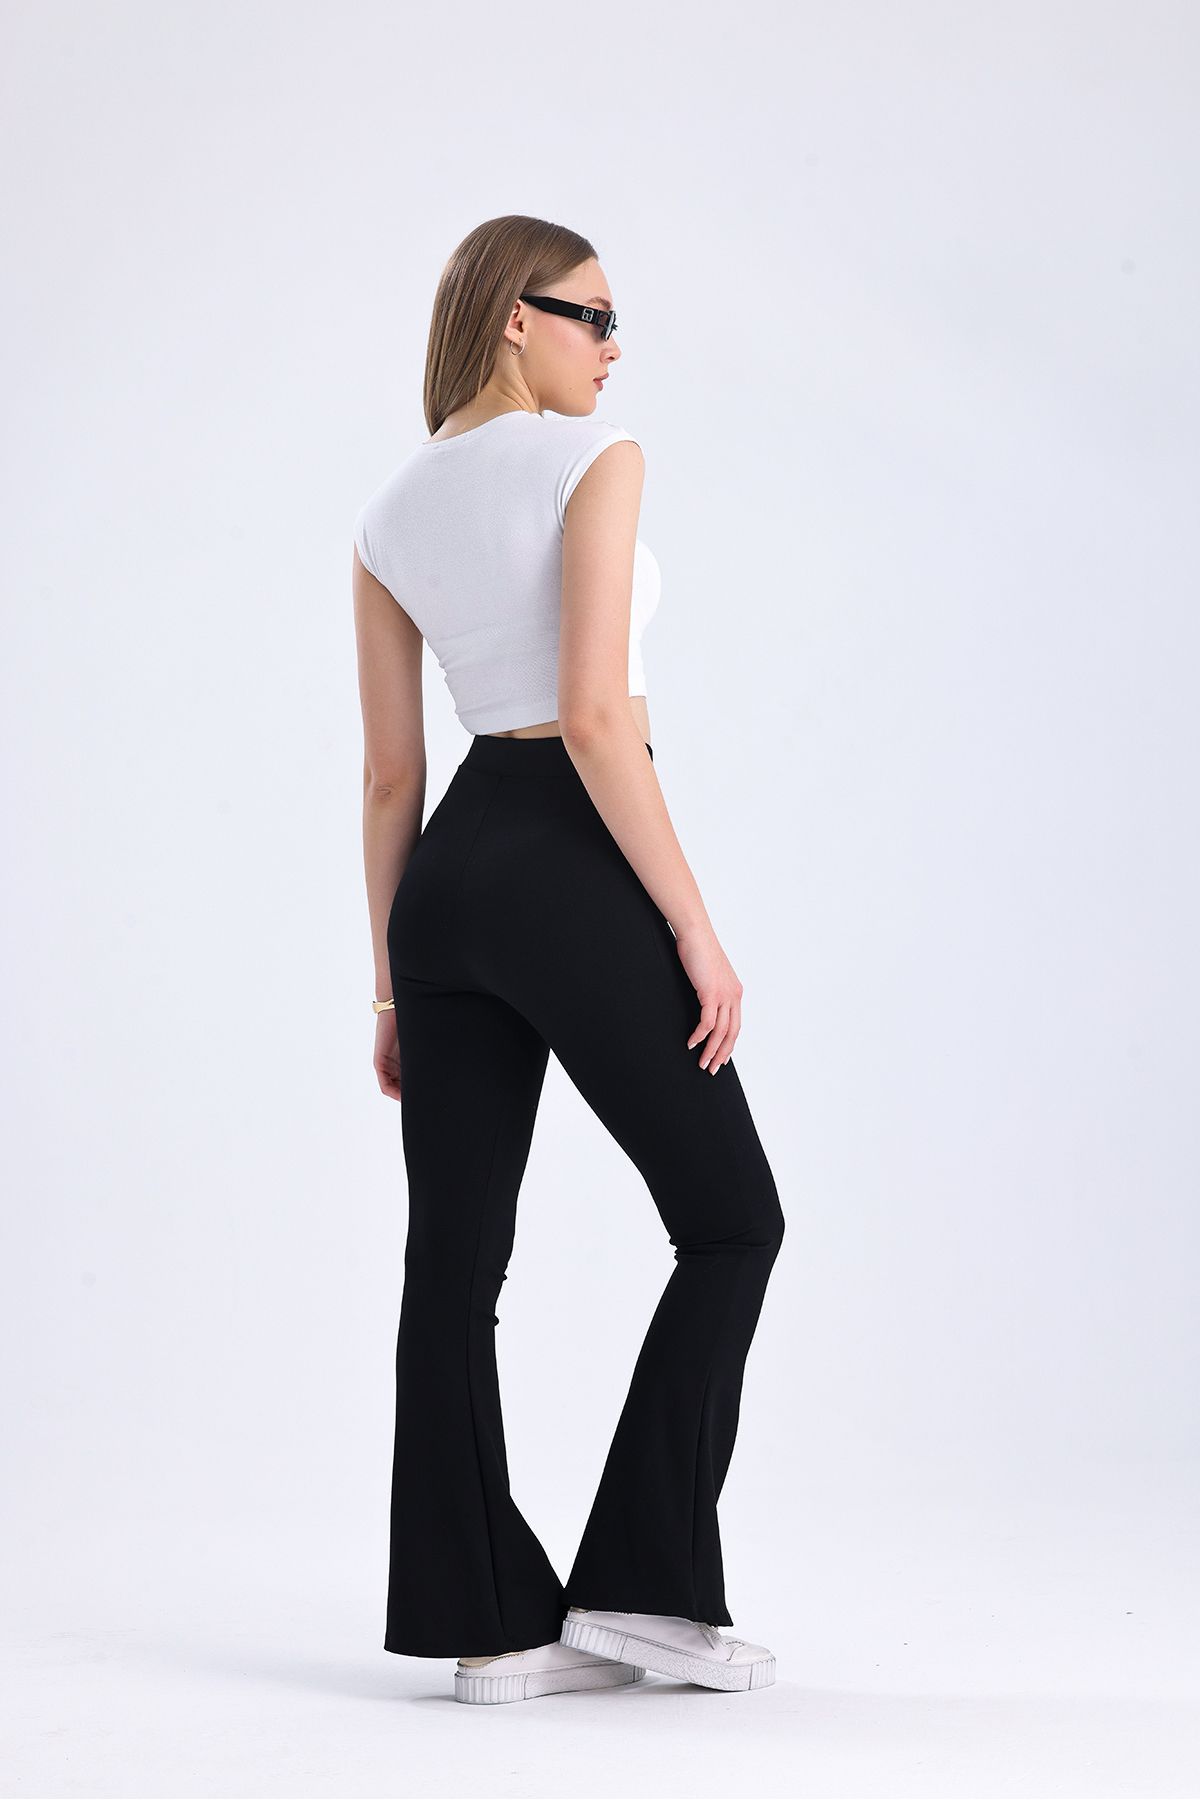 VOSSAX Kadın Siyah Yüksek Bel Çelik Örme Ispanyol Paça Pantolon Likralı Beli Lastikli Toparlayıcı Tayt